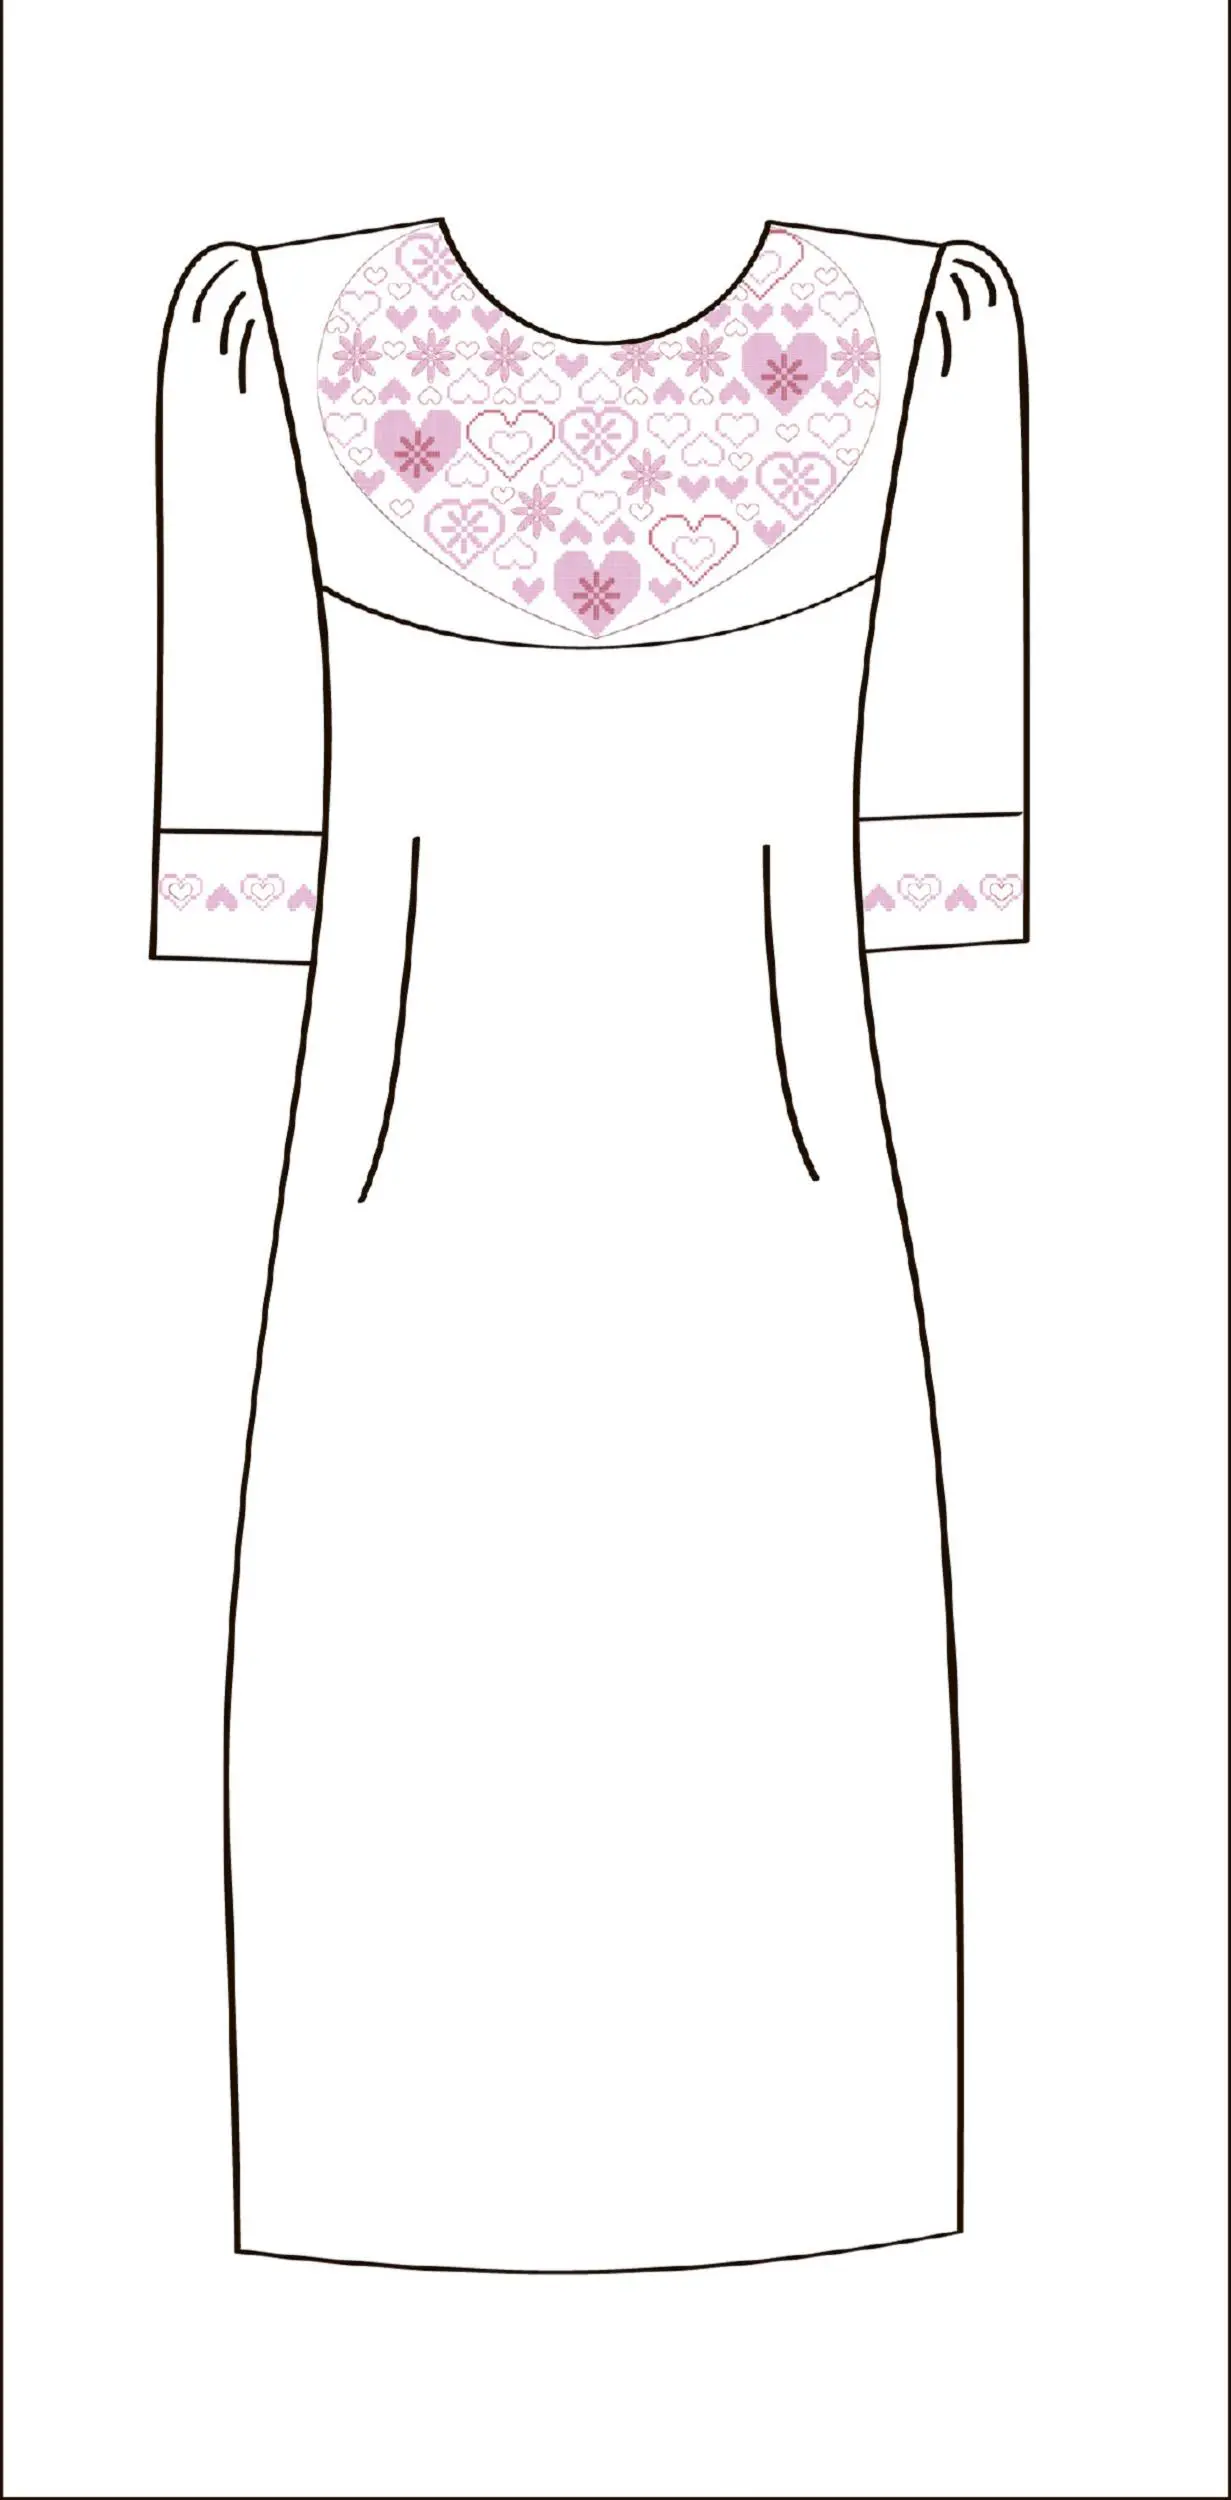 822-14/09 Плаття жіноче, біле, розмір 42